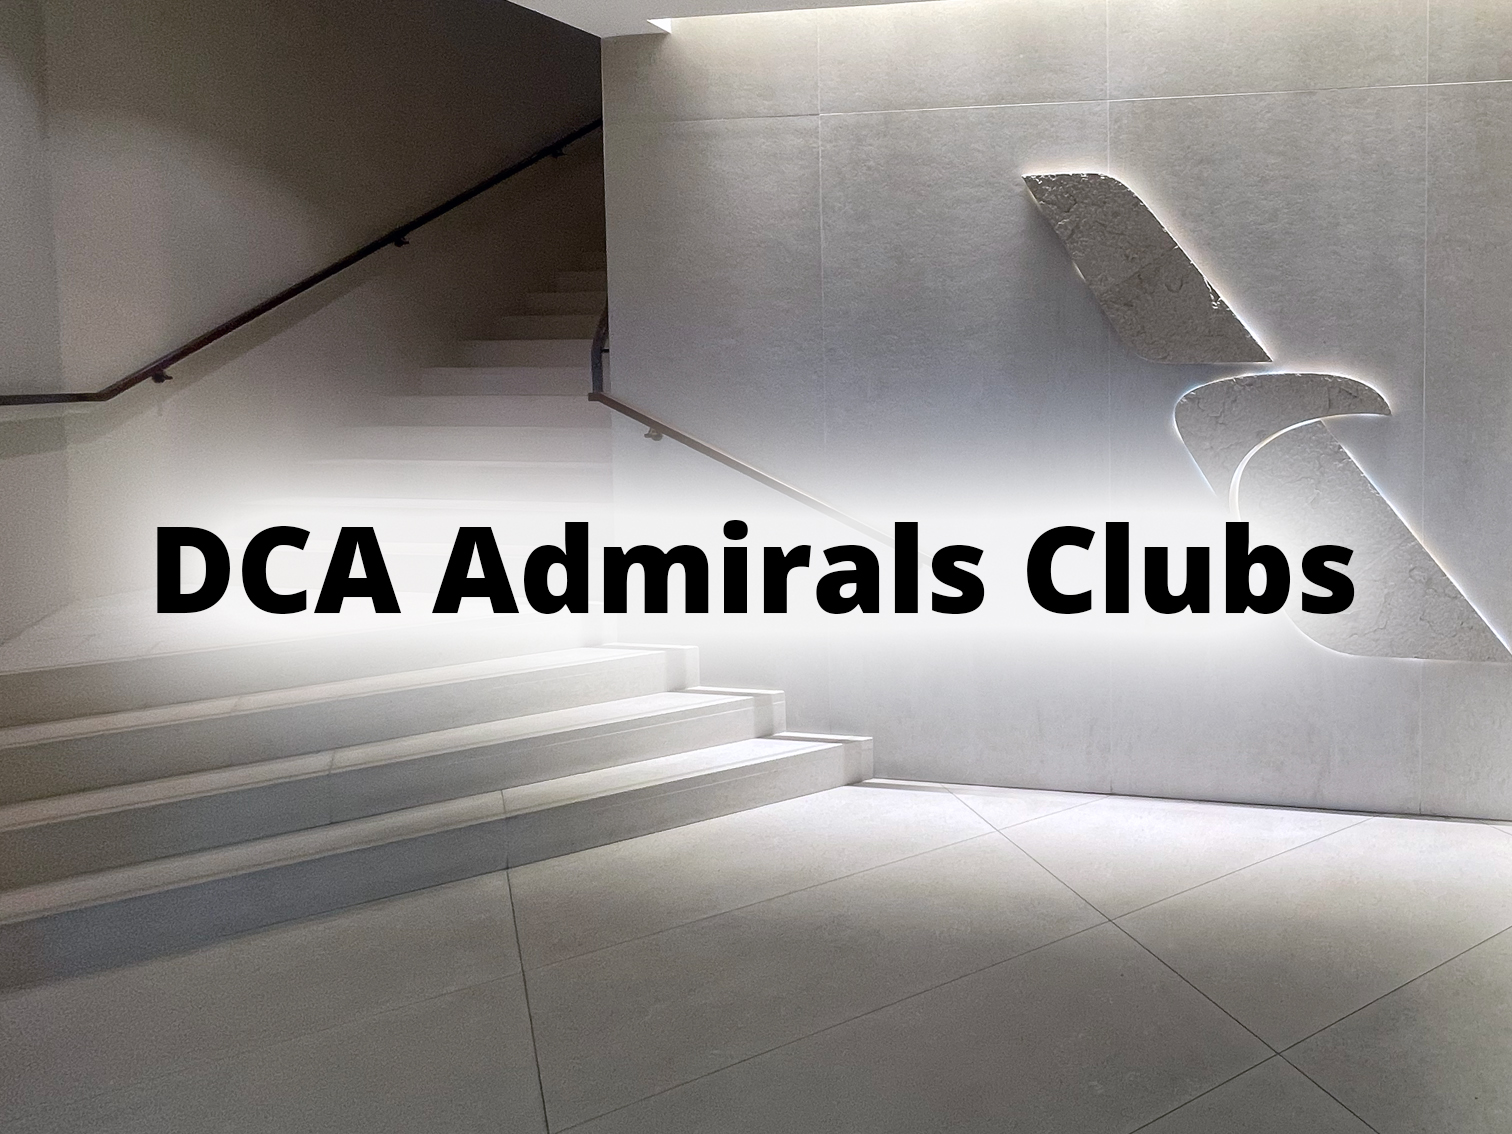 DCA Admirals Club locations